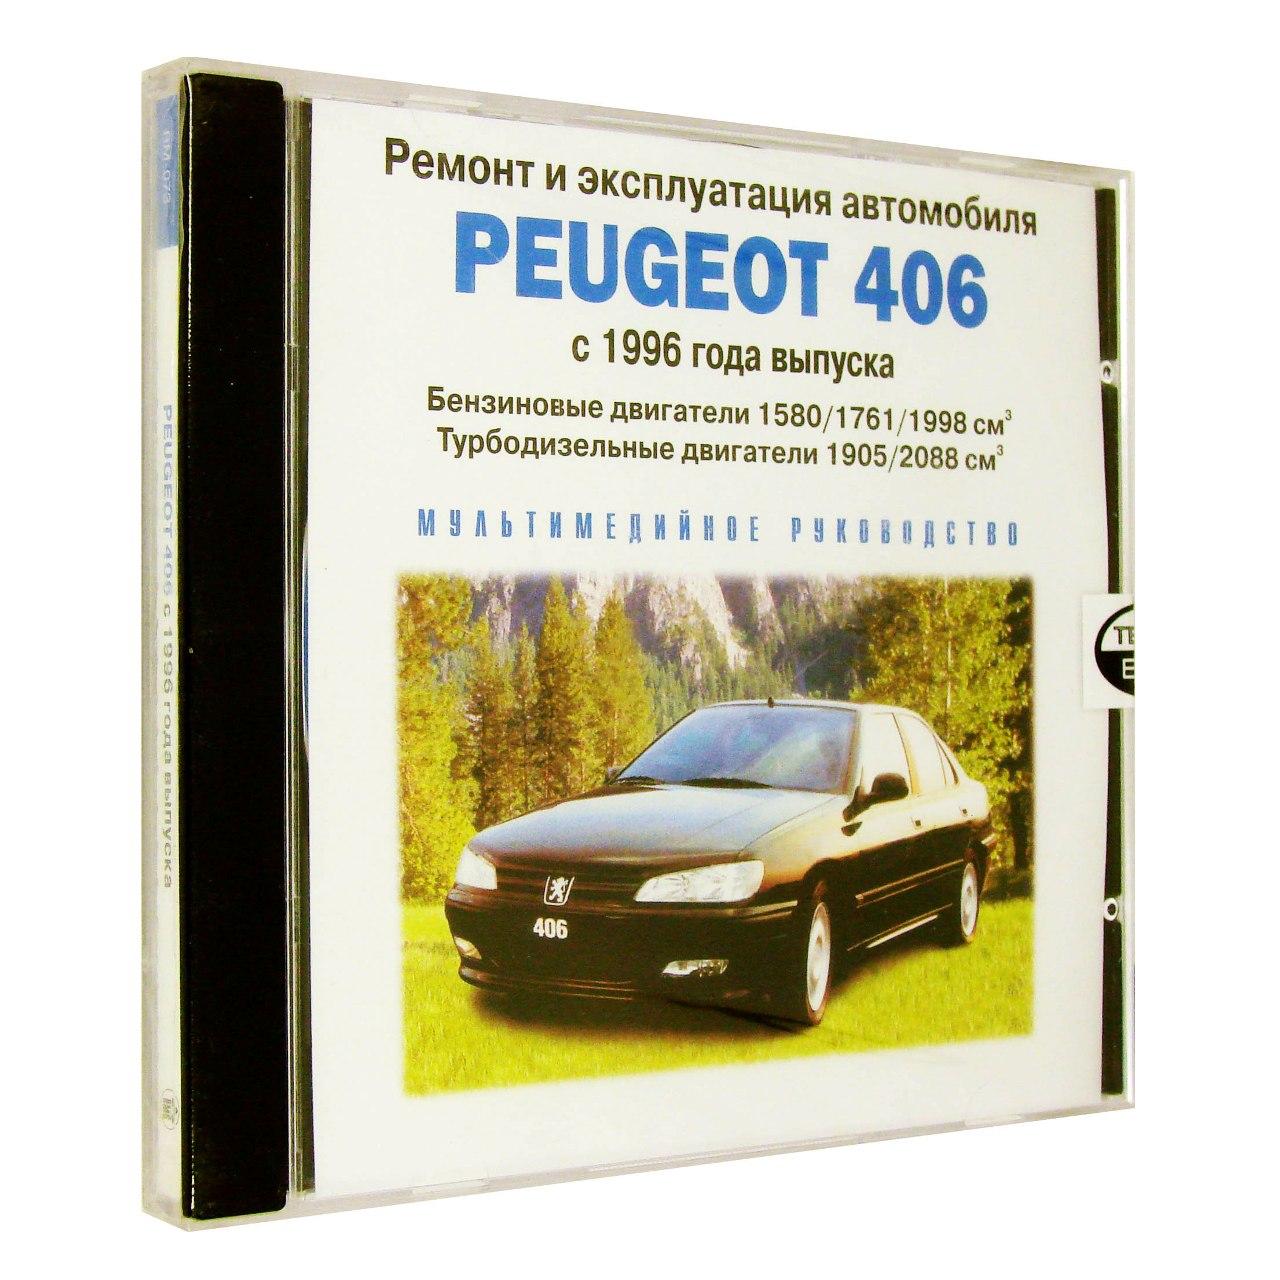 Компьютерный компакт-диск Peugeot 406 c 1996 ремонт и эксплуатация автомобиля (ПК), фирма "RMG Multimedia", 1CD